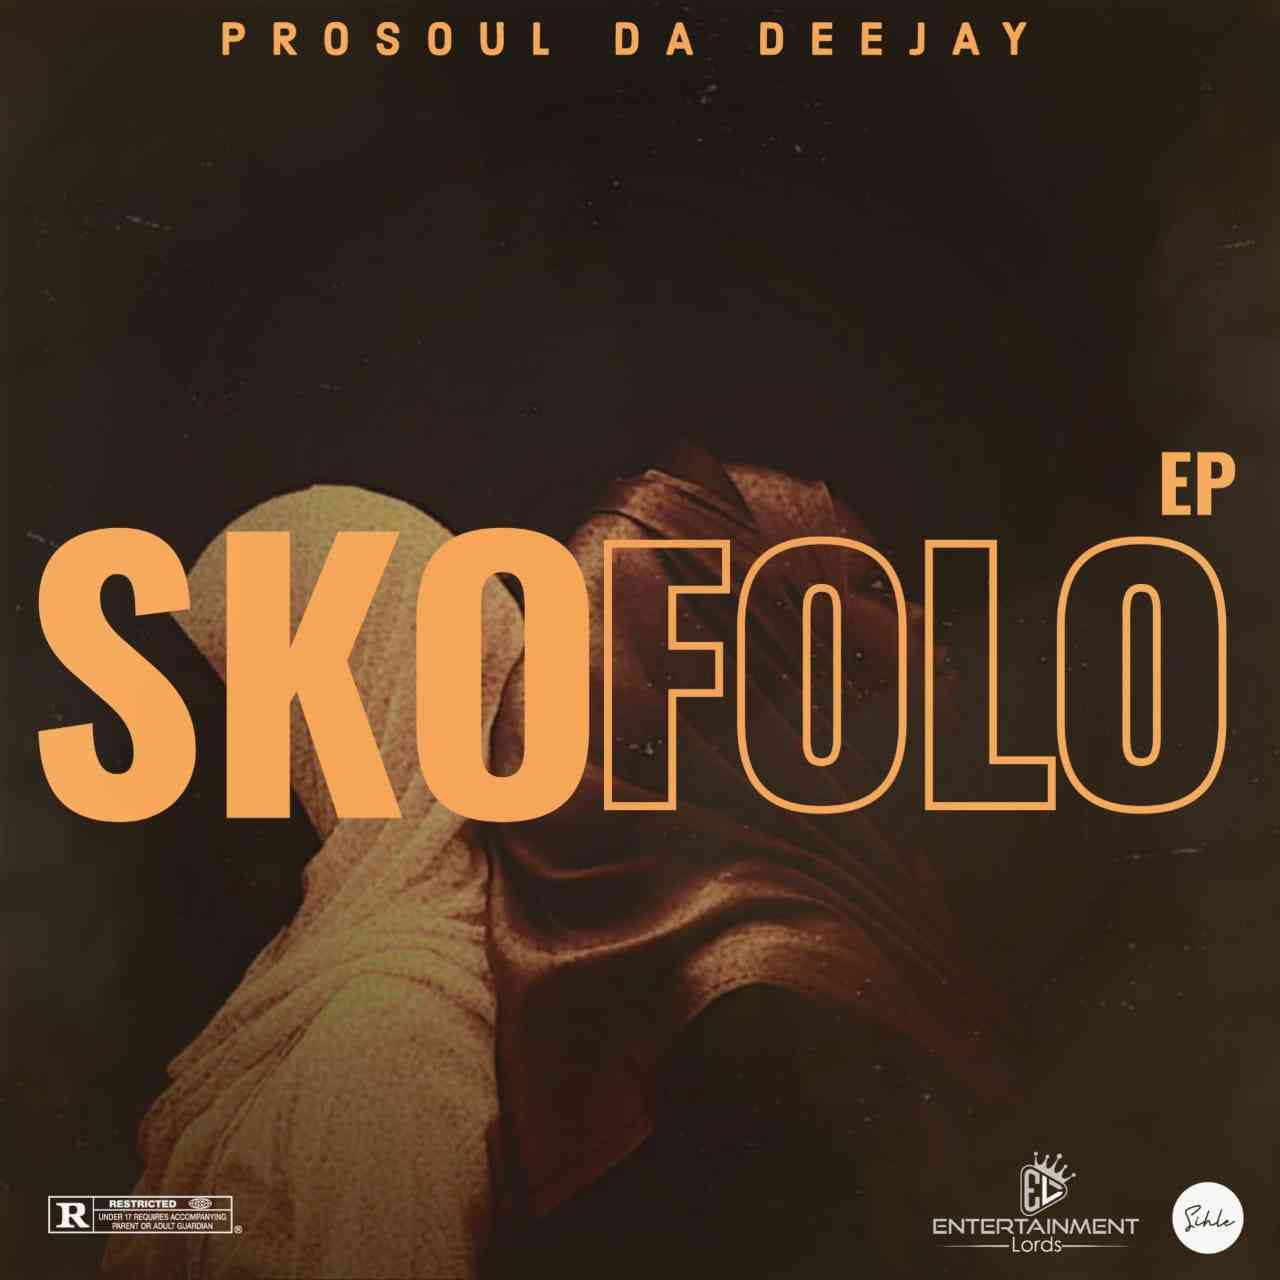 ProSoul Da Deejay Skofolo EP